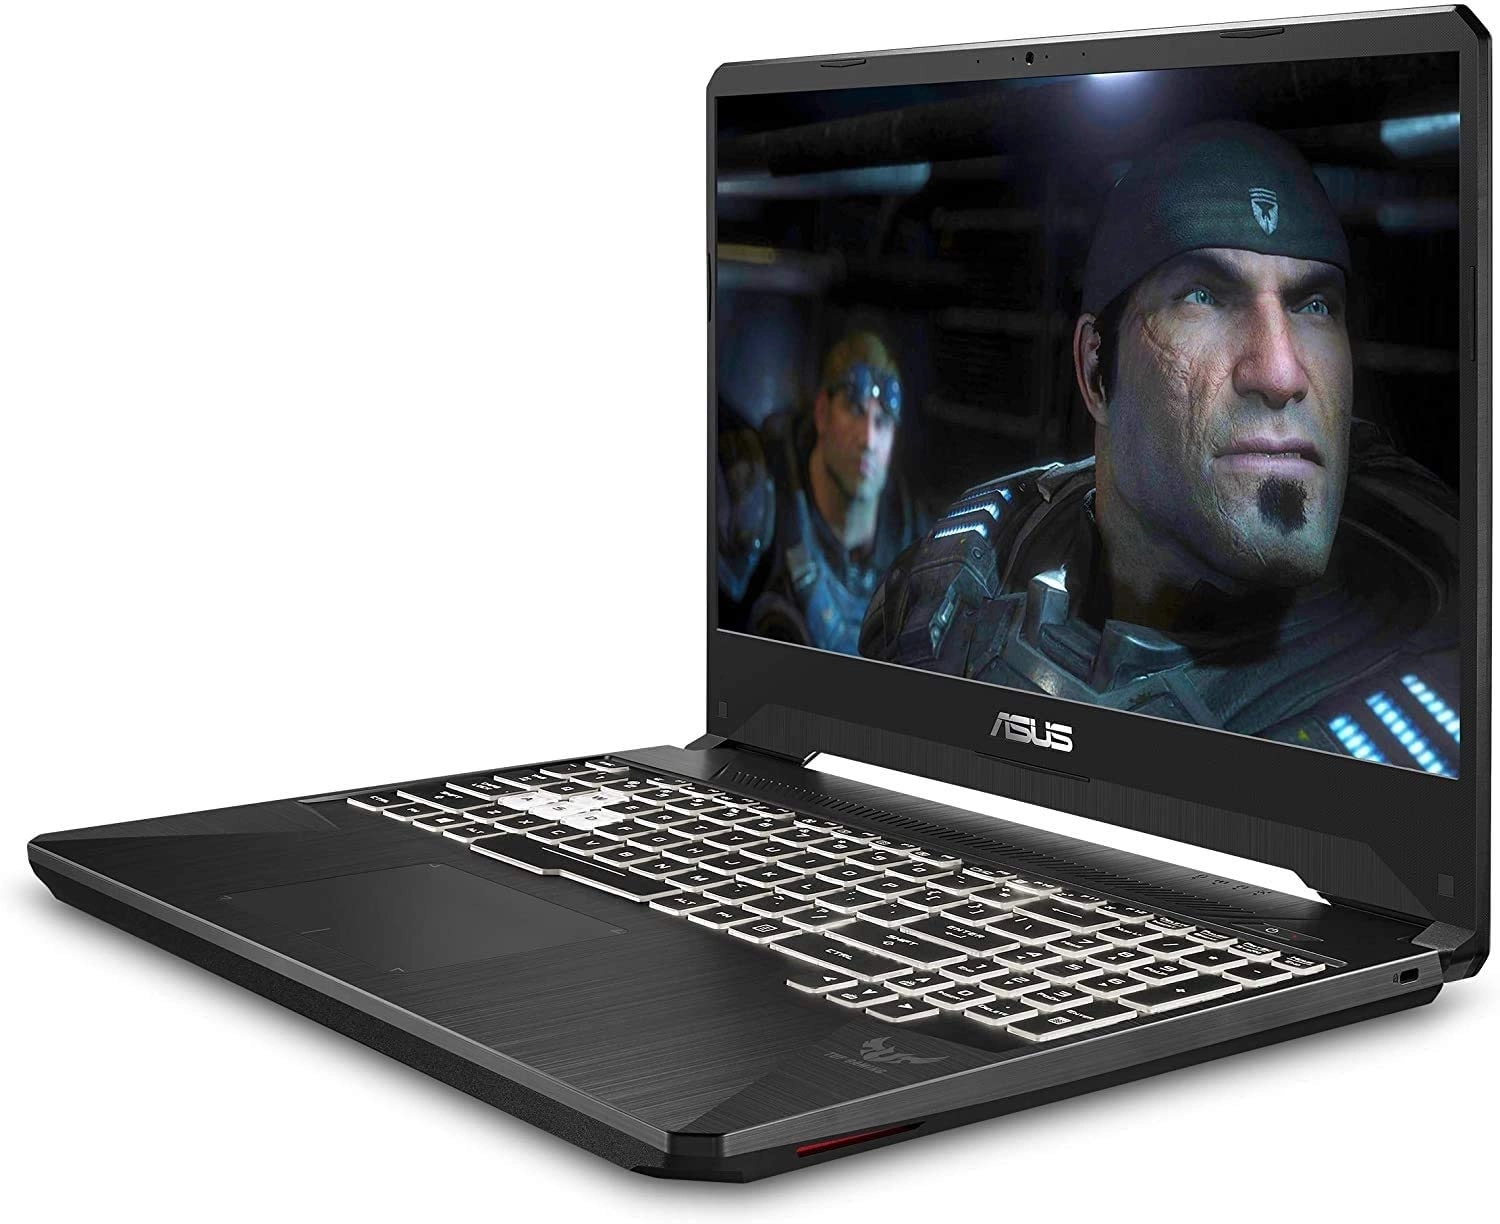 Asus TUF laptop image